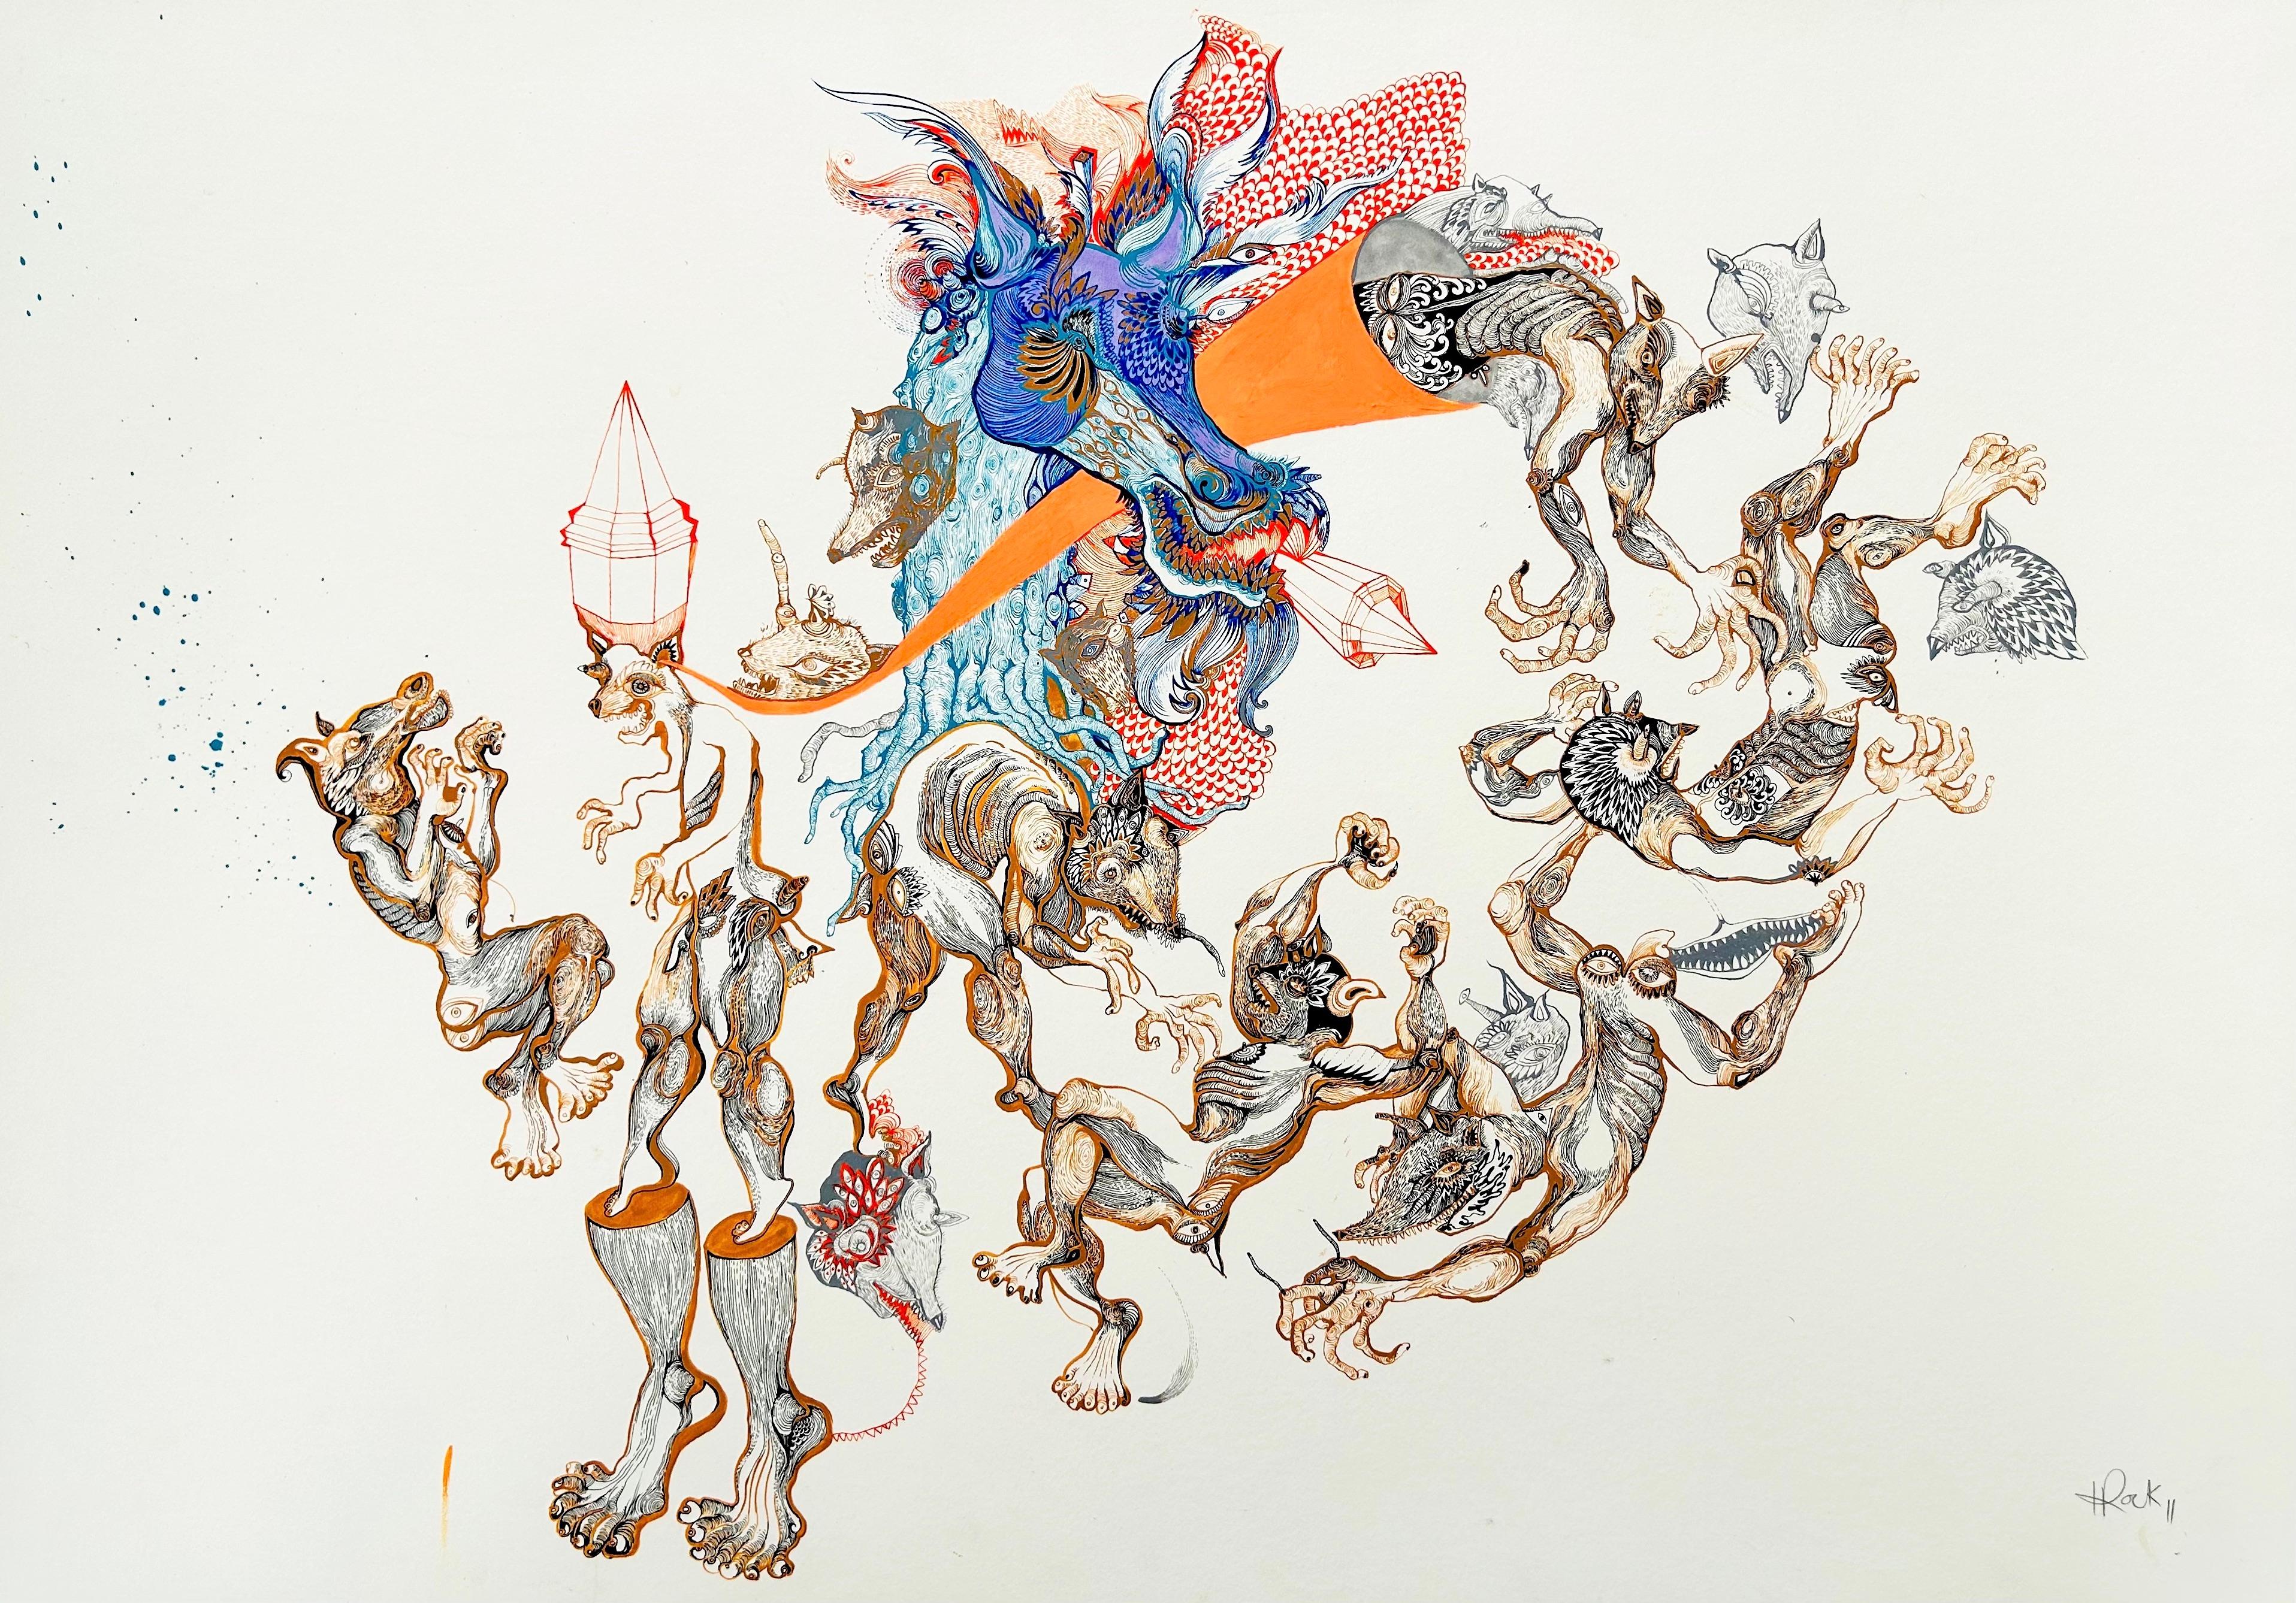  Surrealistisches Gemälde Royal College Kunst LGBTQ+ weibliche Künstlerin Rodeo in Orange und Blau